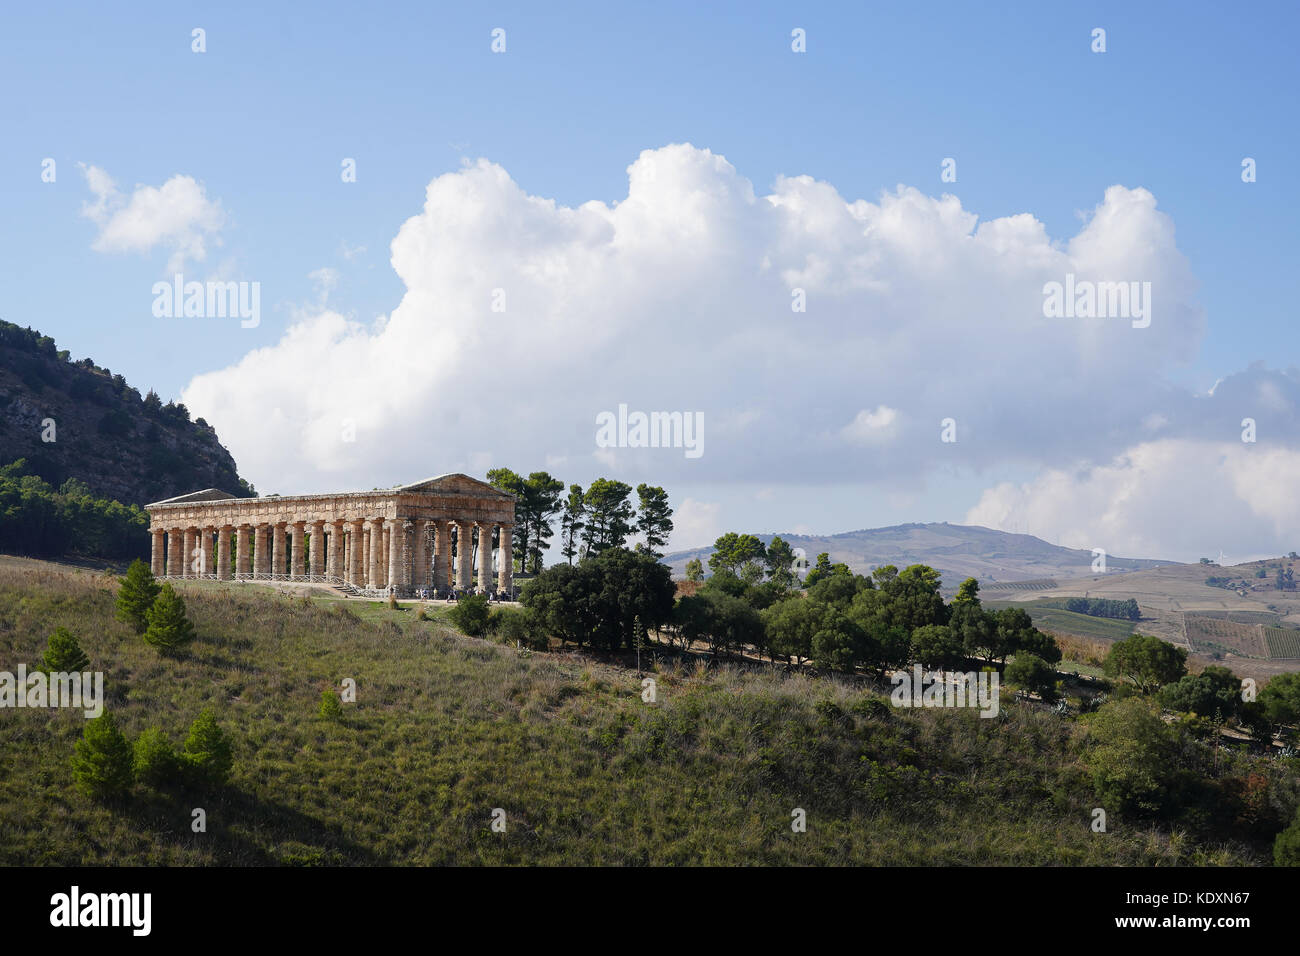 Il tempio greco al sito storico di Segesta. da una serie di foto di viaggio in Sicilia, Italia. photo Data: sabato, 30 settembre 2017. foto c Foto Stock